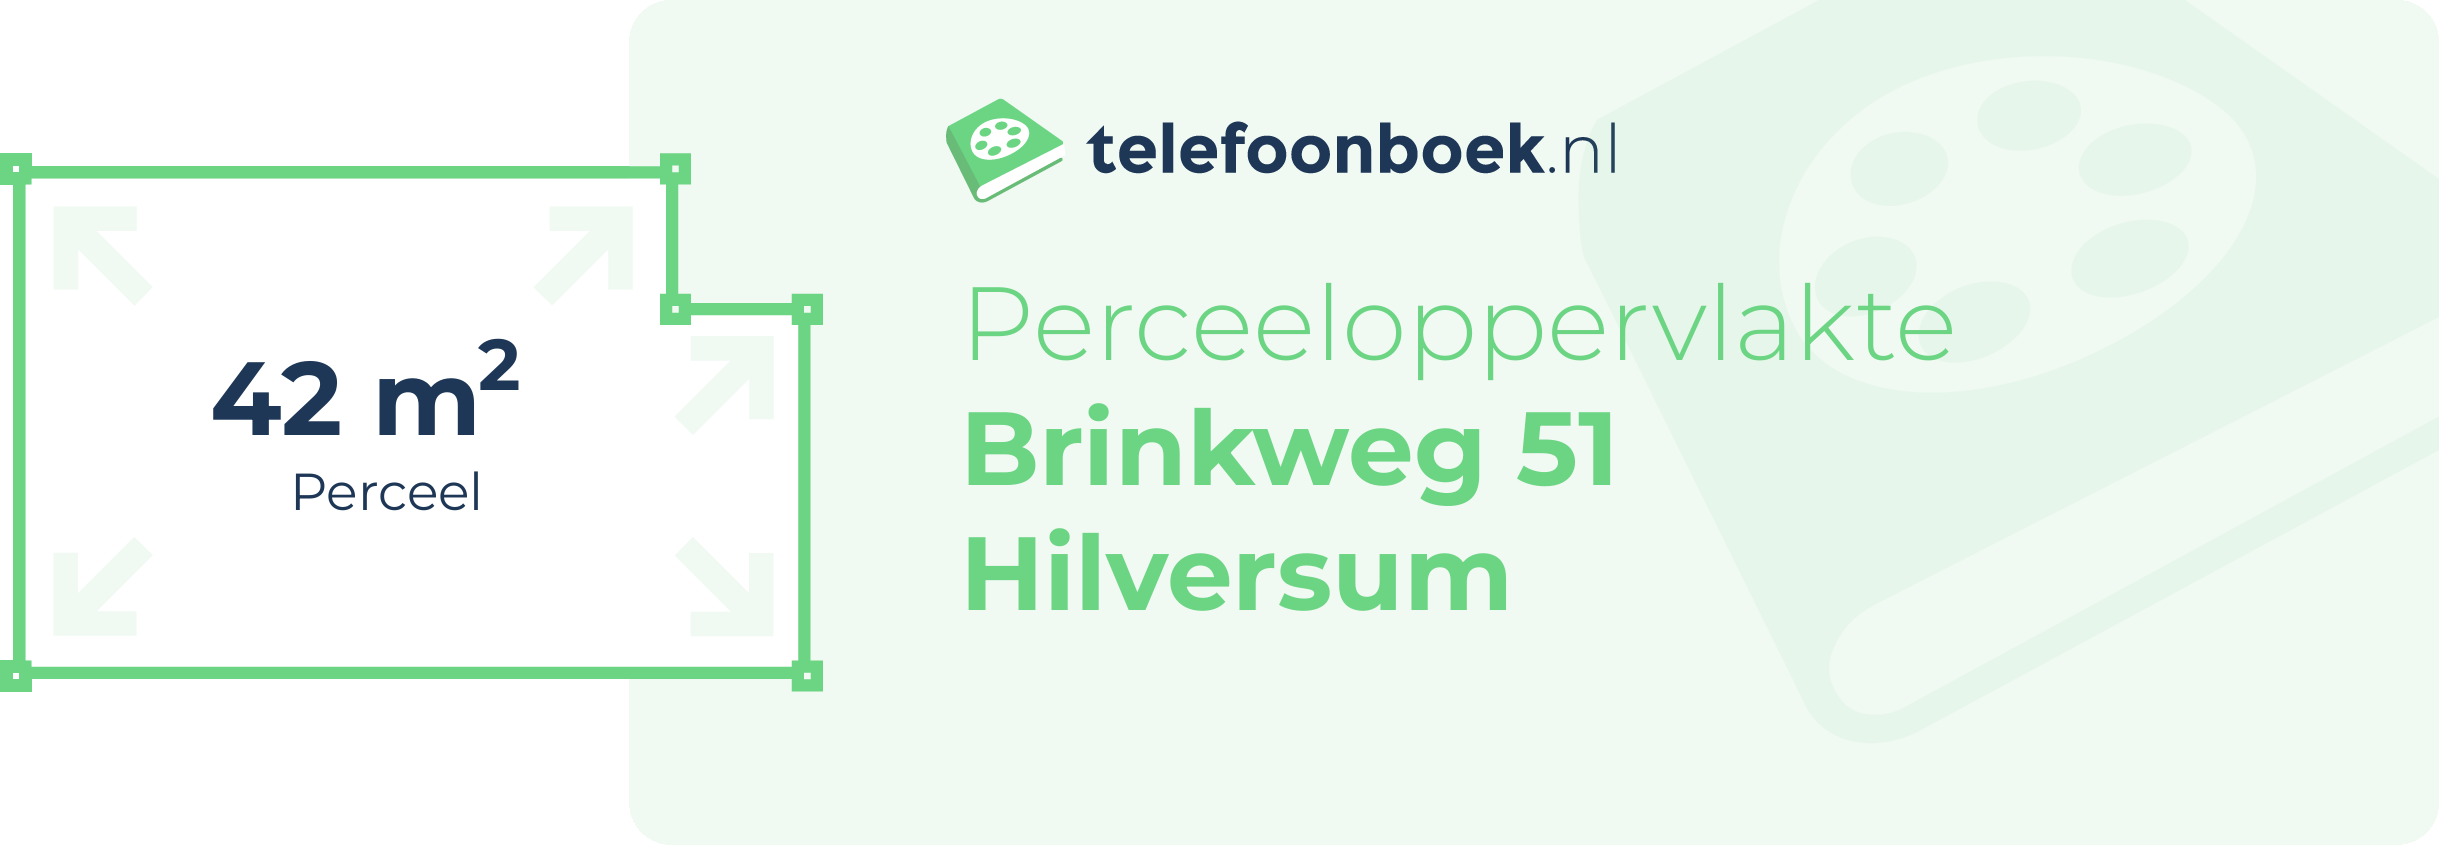 Perceeloppervlakte Brinkweg 51 Hilversum